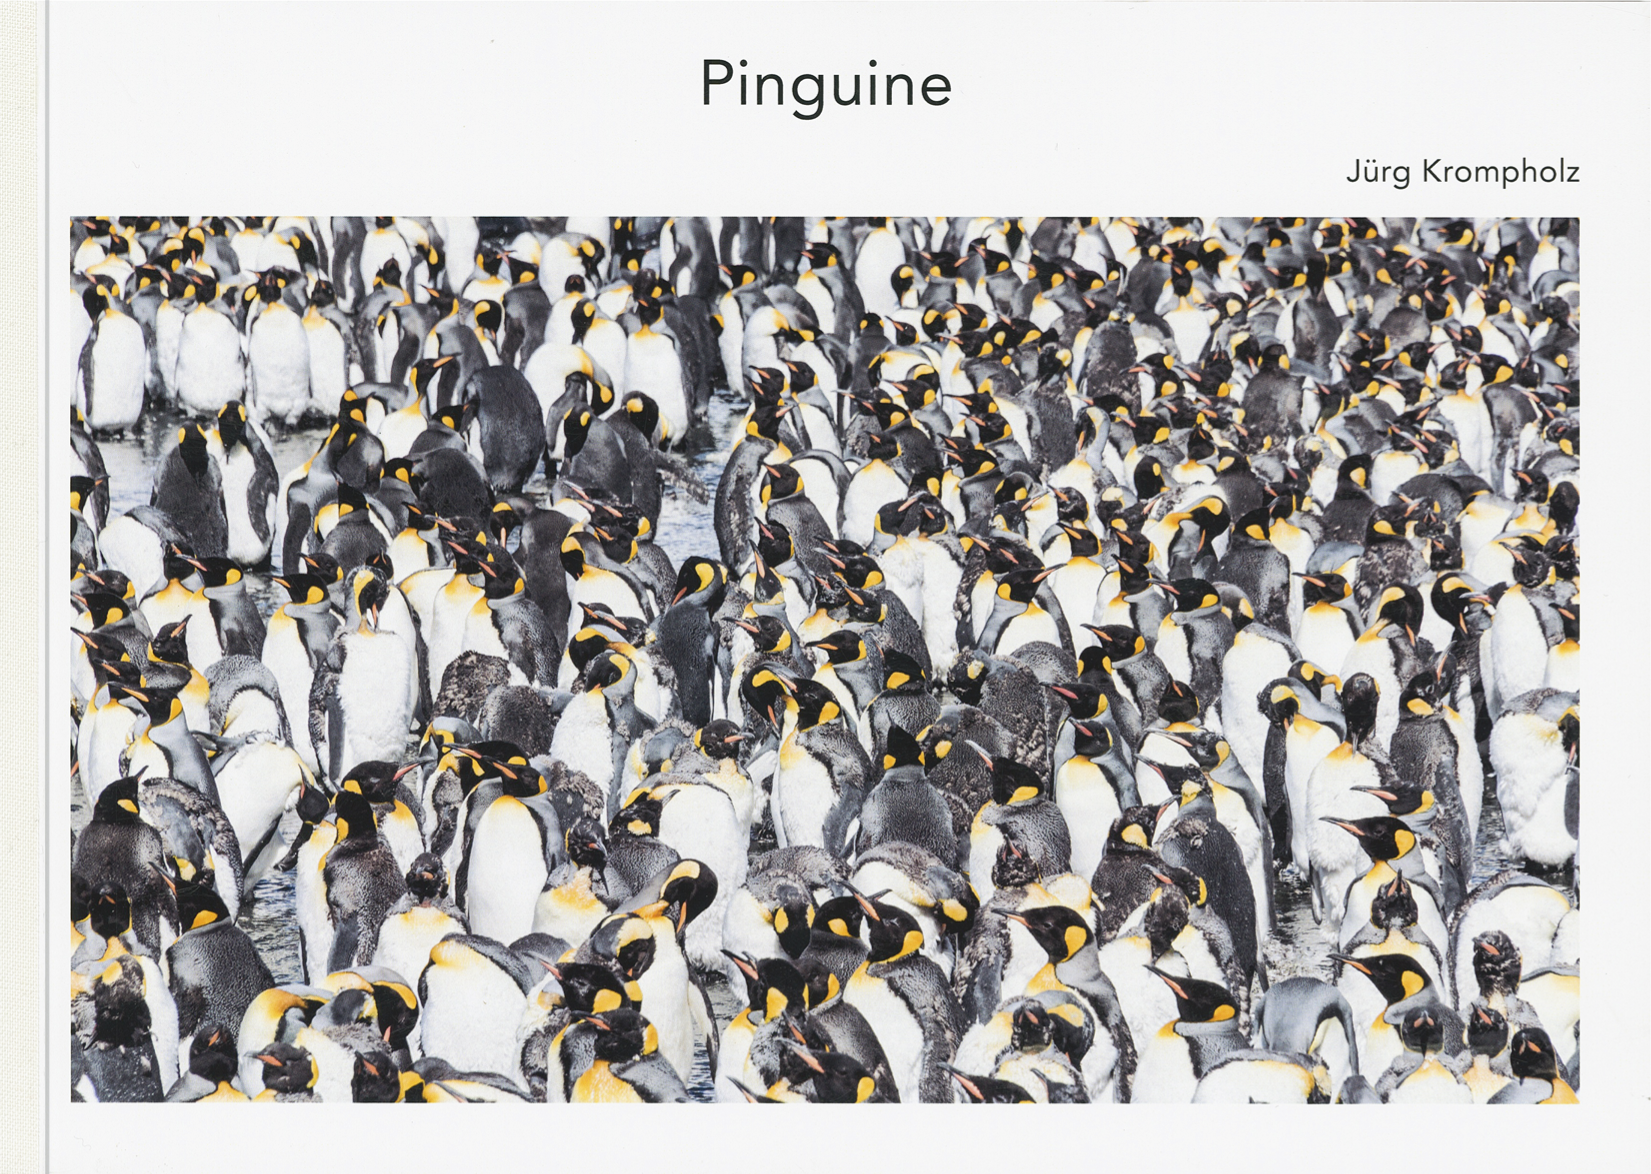 Jürg Krompholz: Pinguine - A WEBER VERLAG